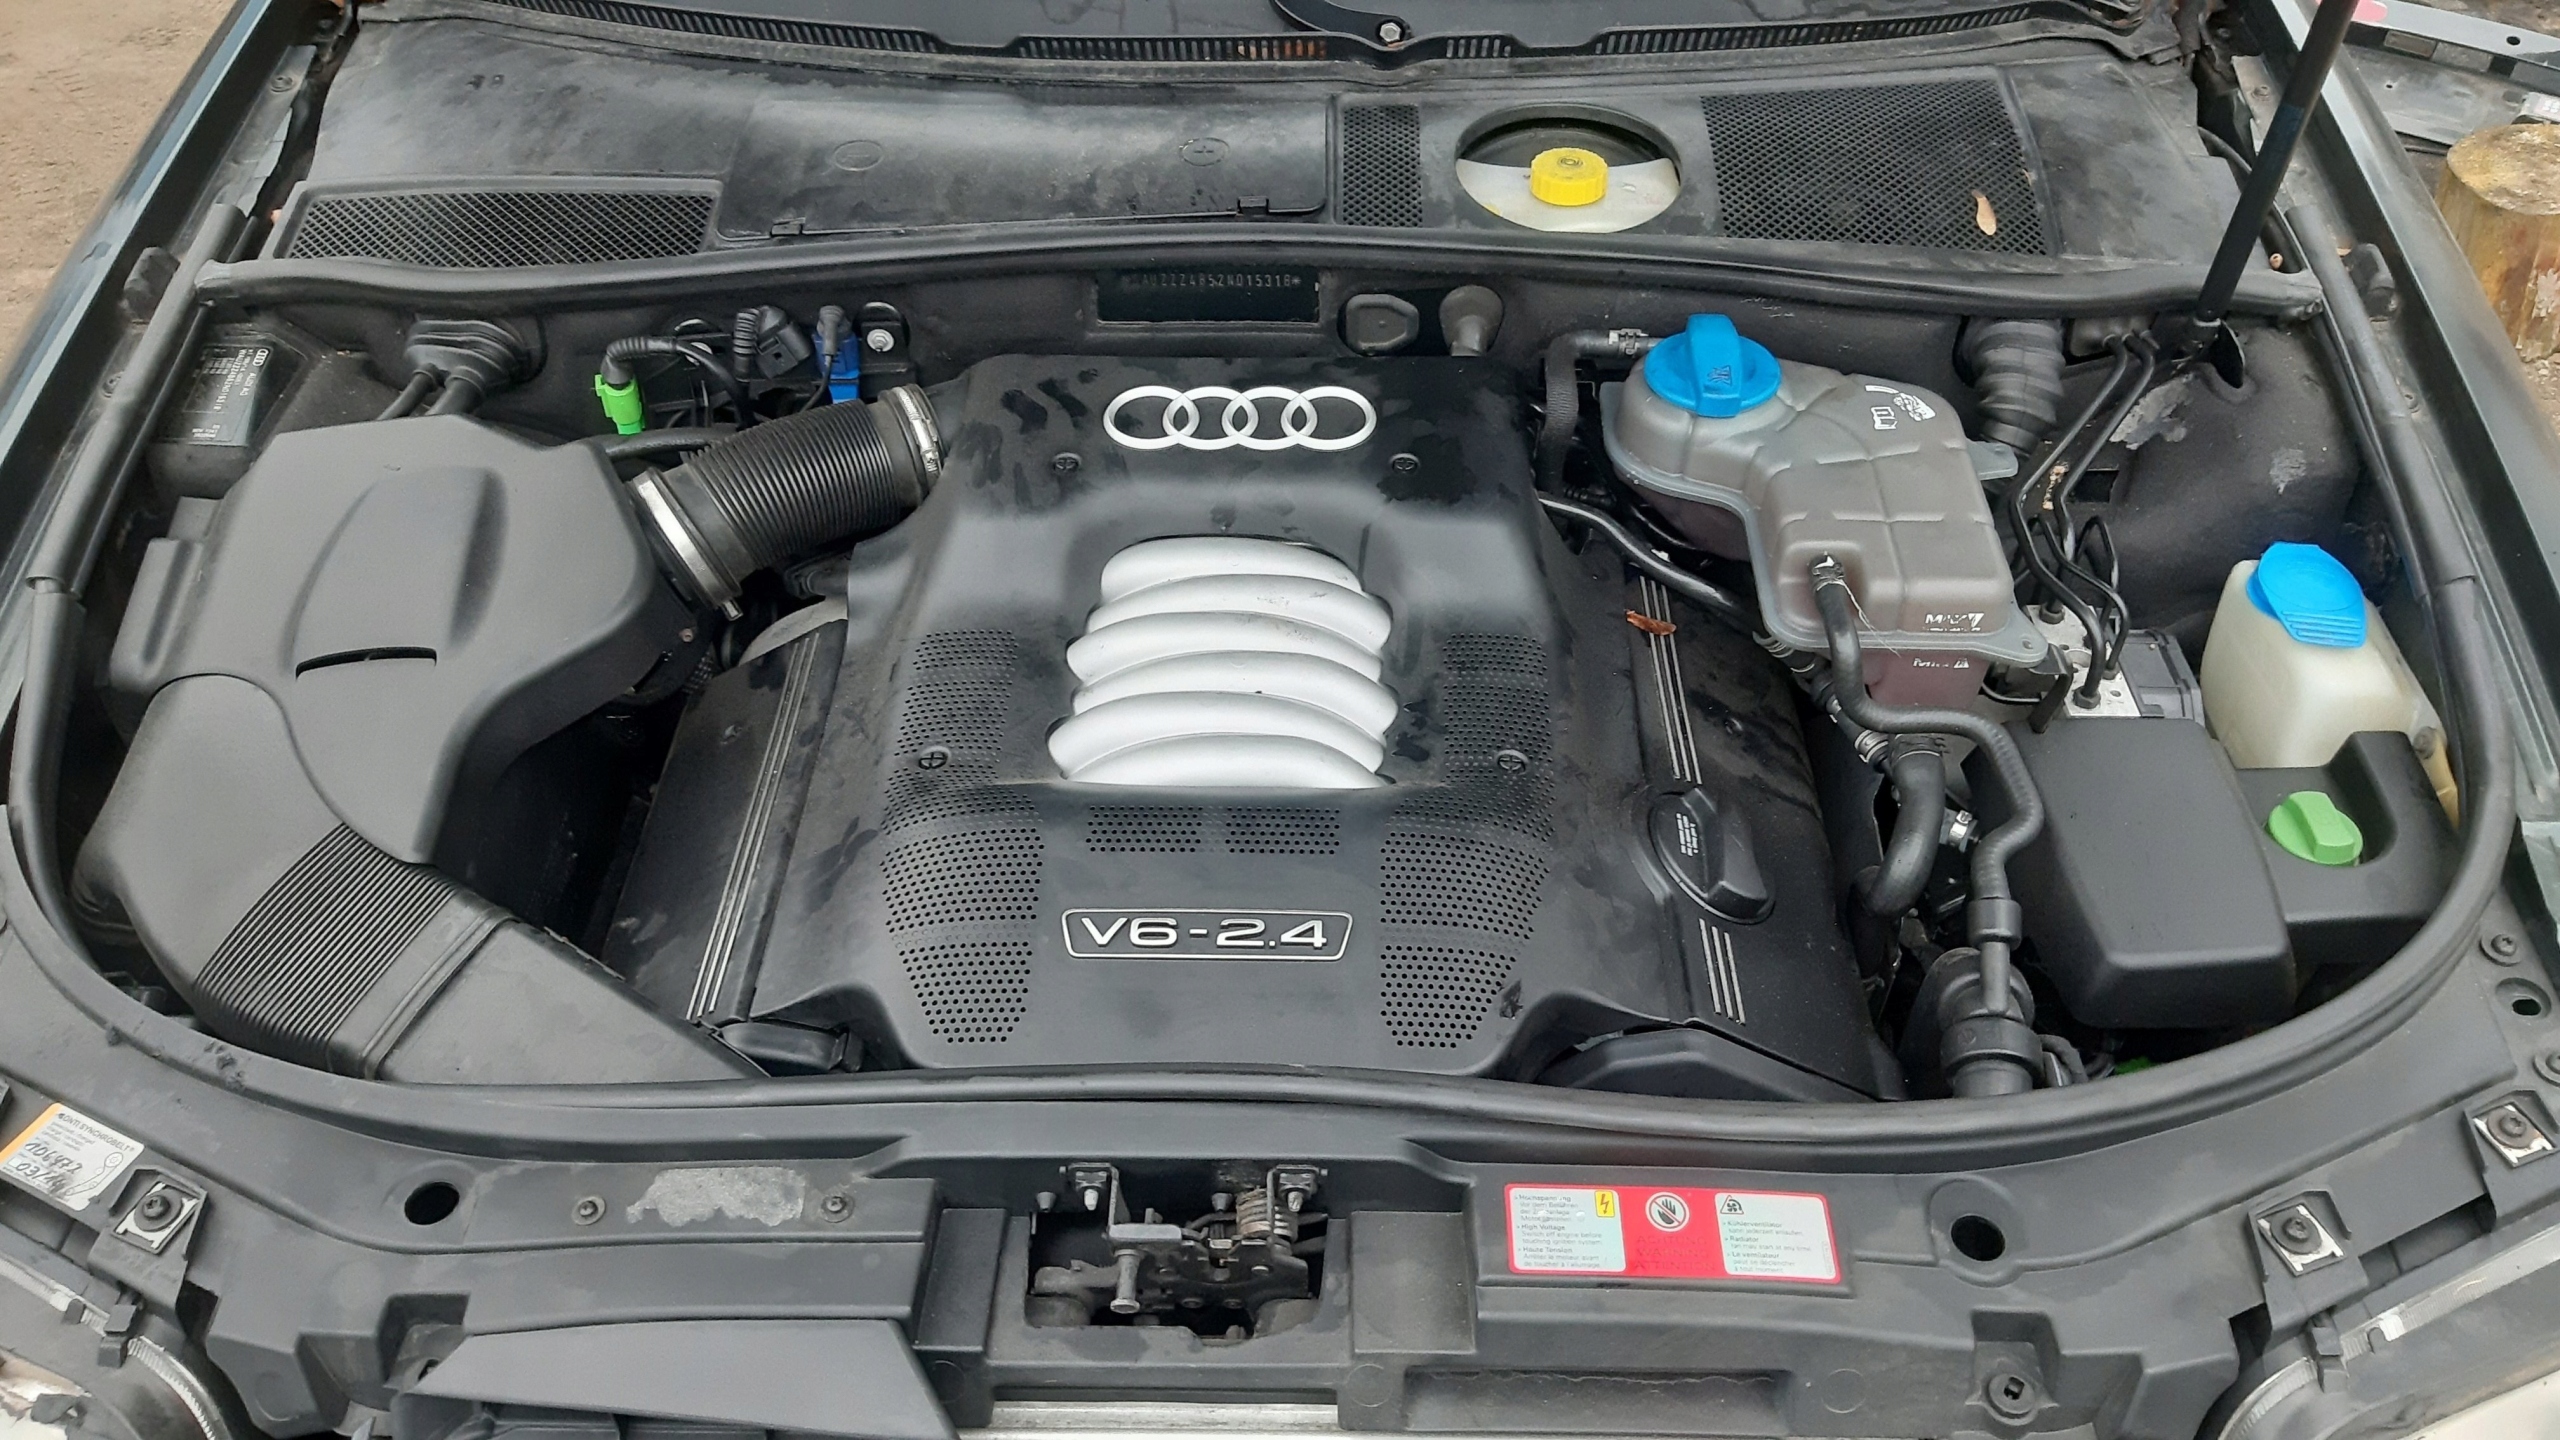 Двигатель Б/у на Audi A4 B6 - купить в Киеве. Лучшая цена и доставка по Украине | РБ-Авто